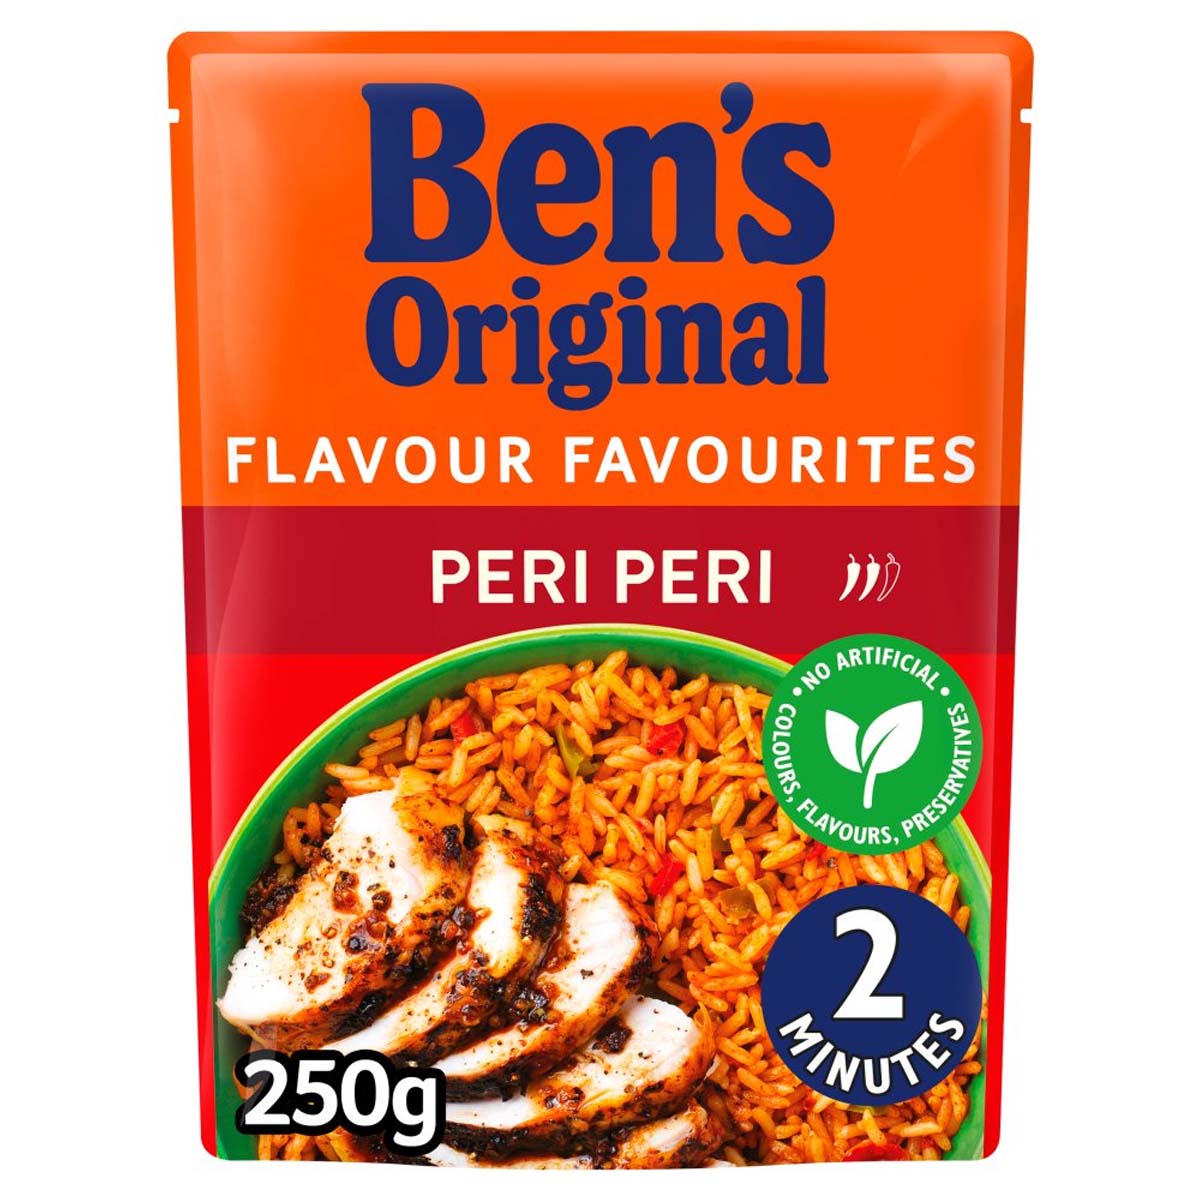 Bens Original - Peri Peri Microwave Rice - 250g - Continental Food Store